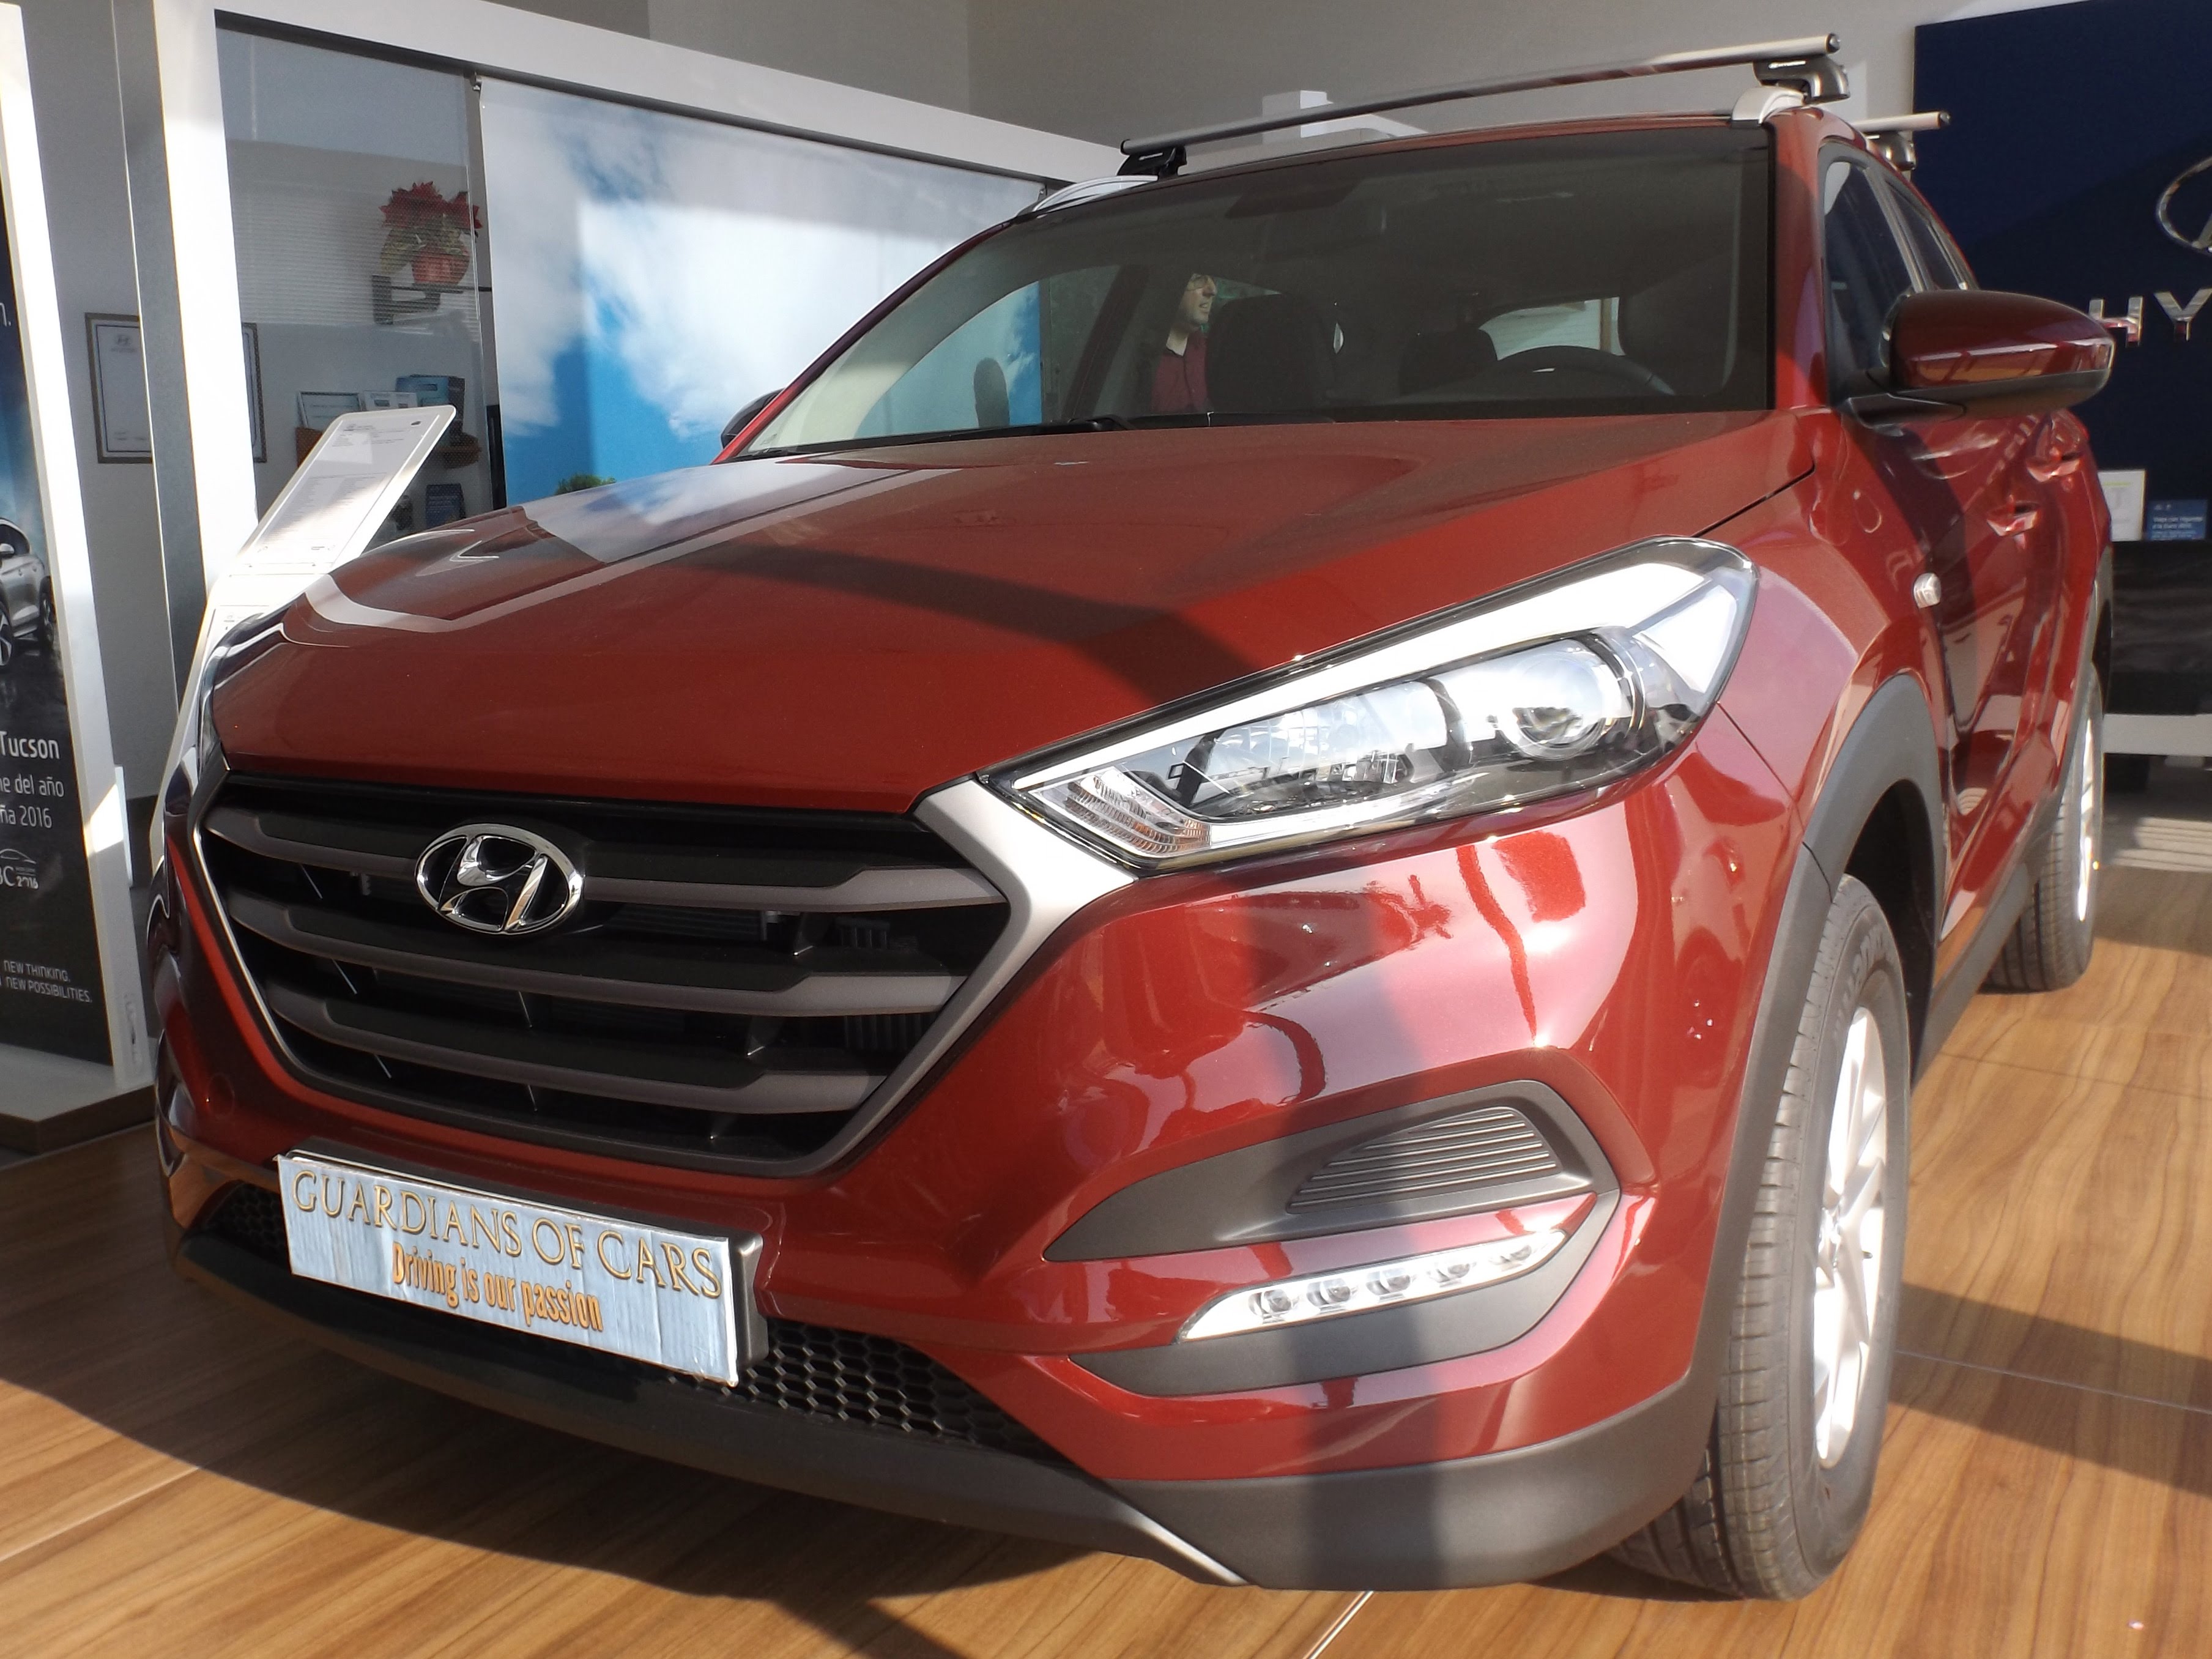 Hyundai Tucson 2016 Anàlisi Review de GuardiansofCars